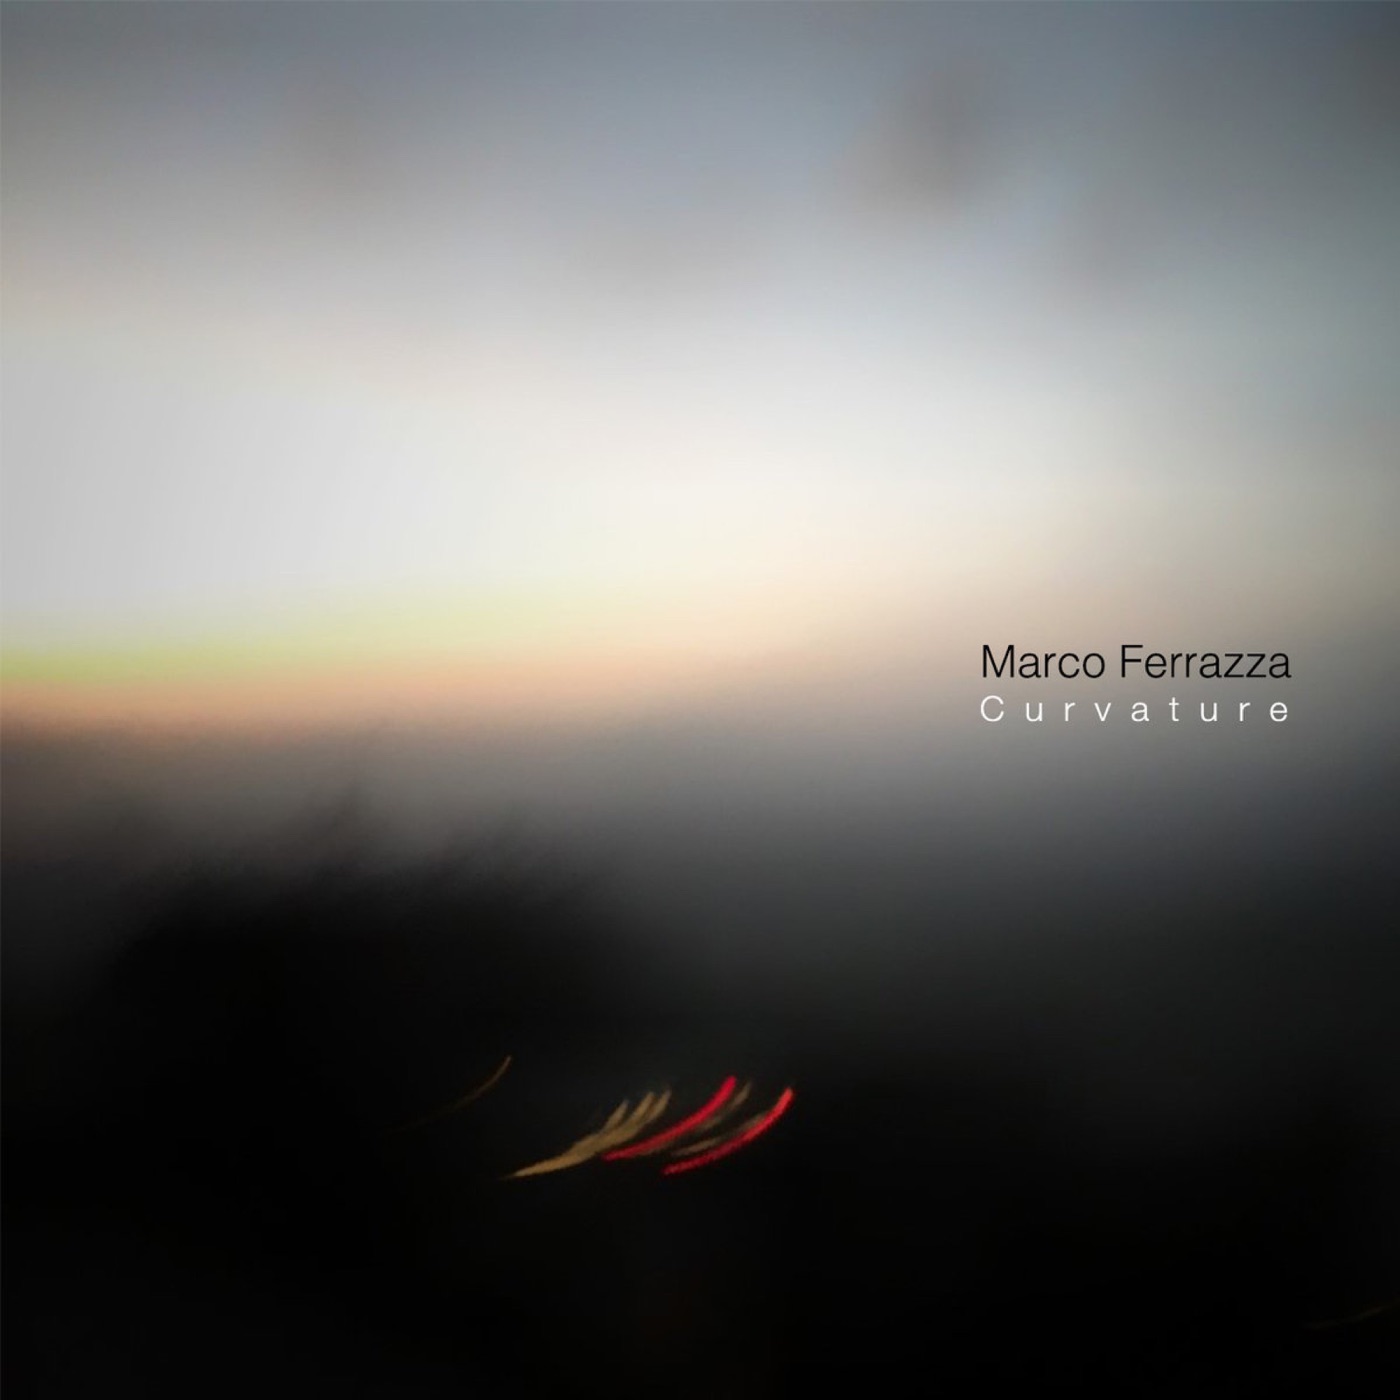 Curvature by Marco Ferrazza